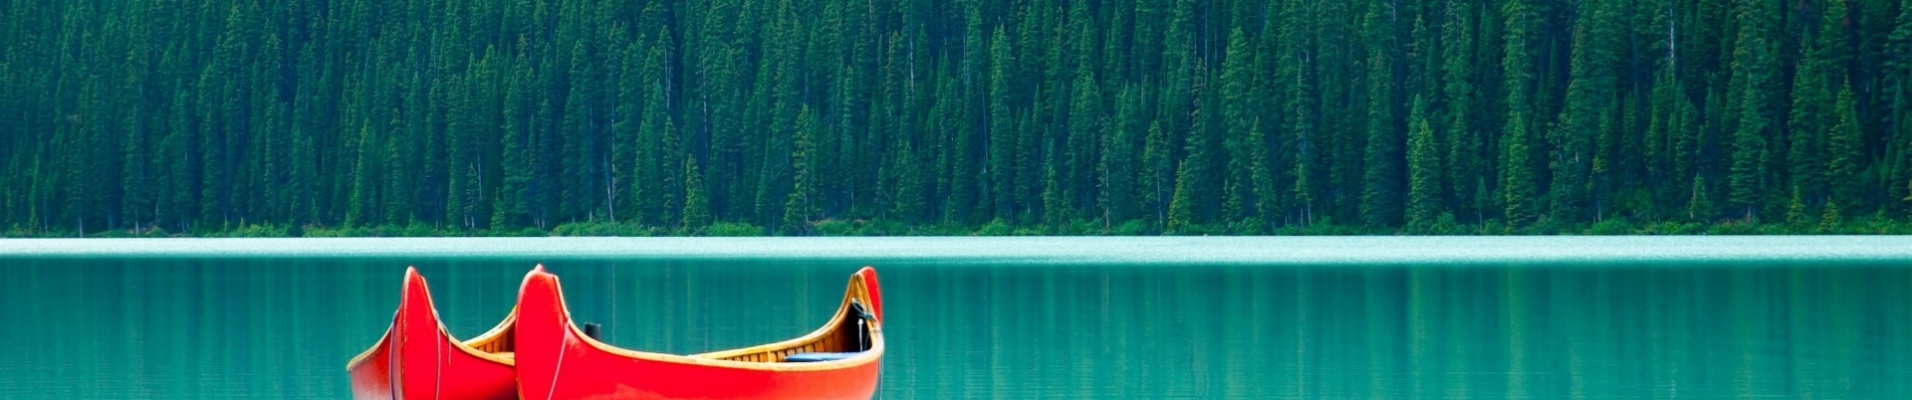 canoes-sur-lac-paisible-banff-national-park-canada